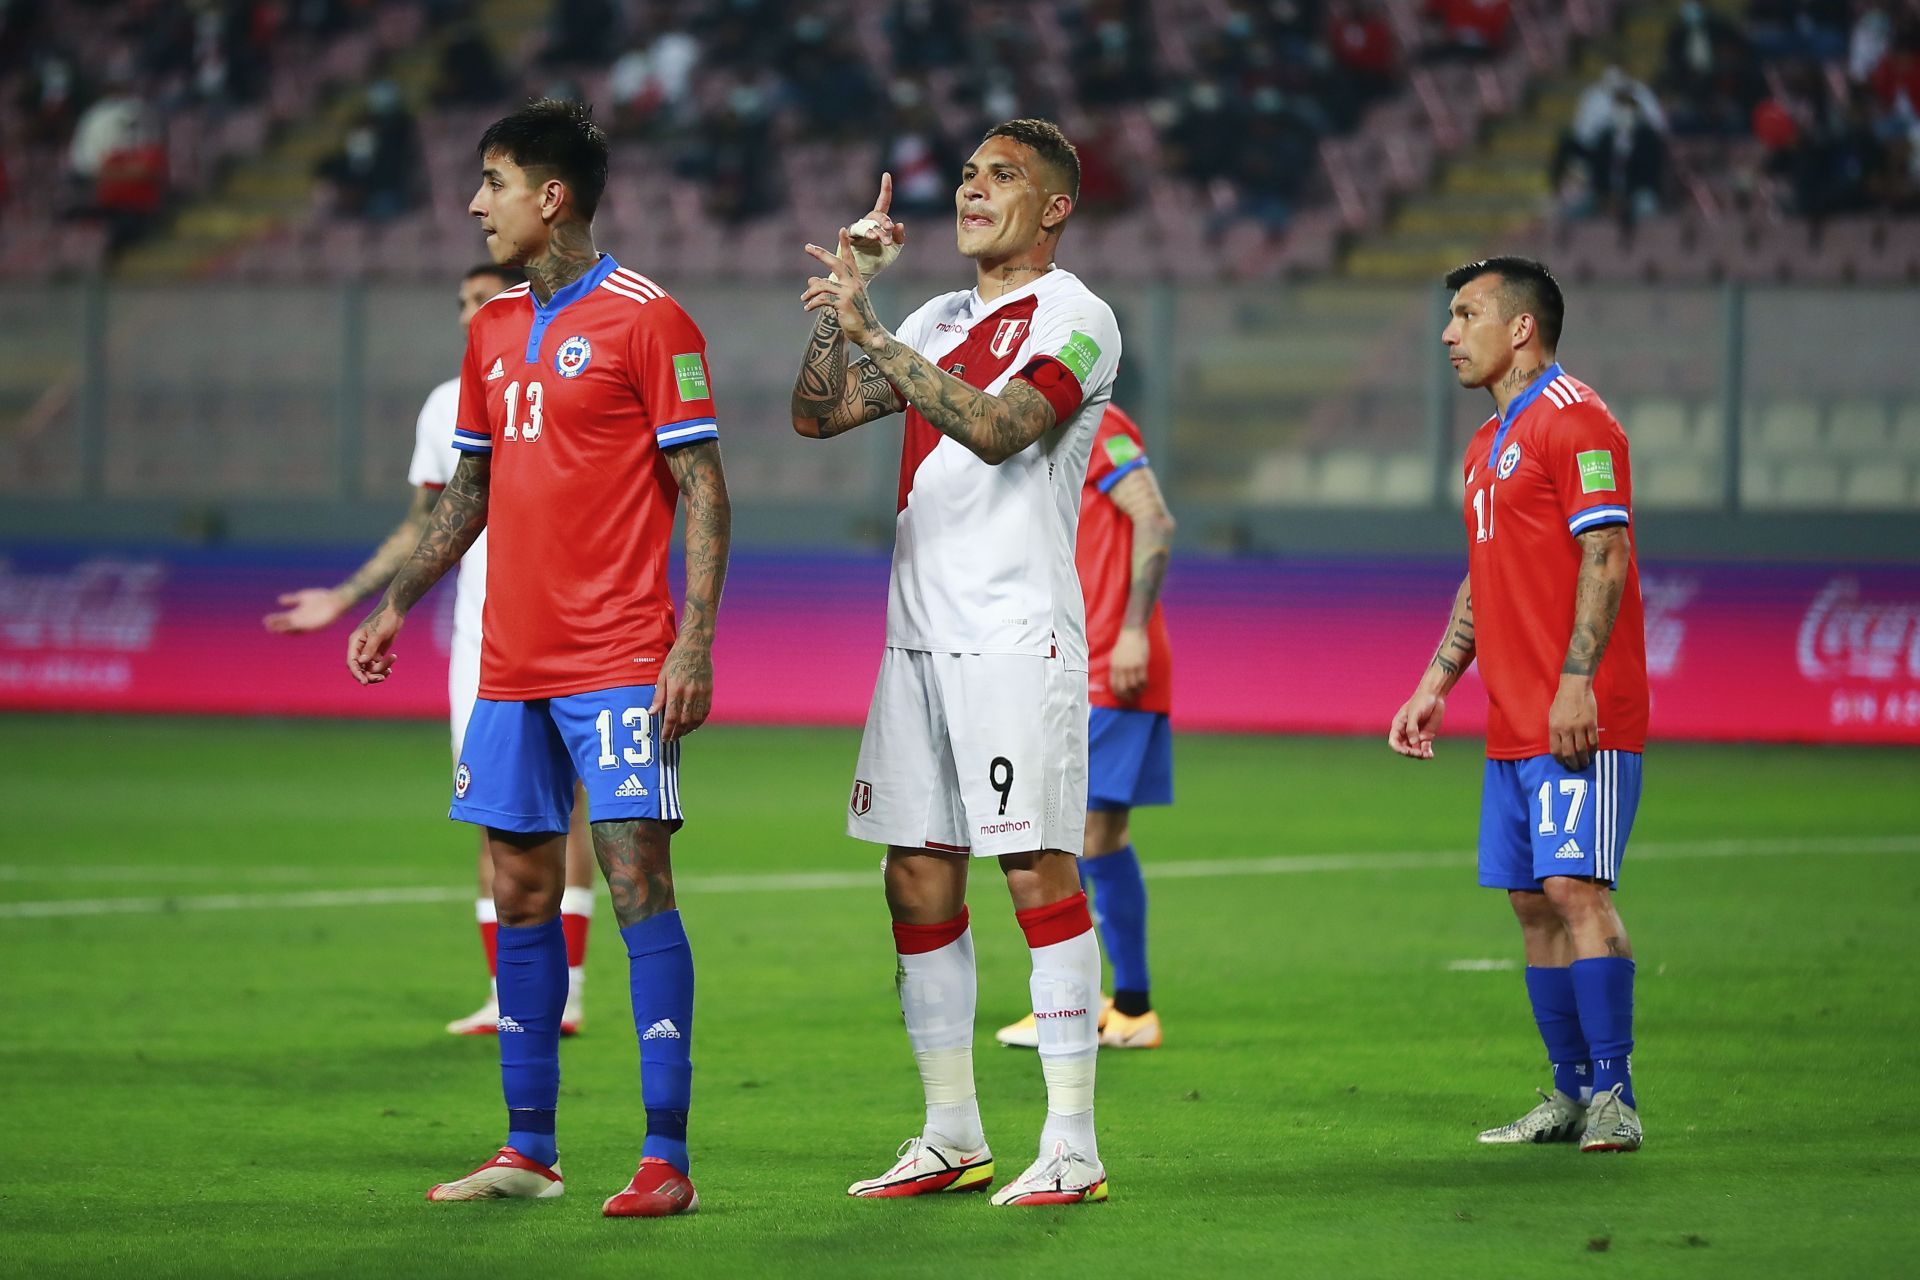 Peru v Chile - FIFA World Cup 2022 Qatar Qualifier